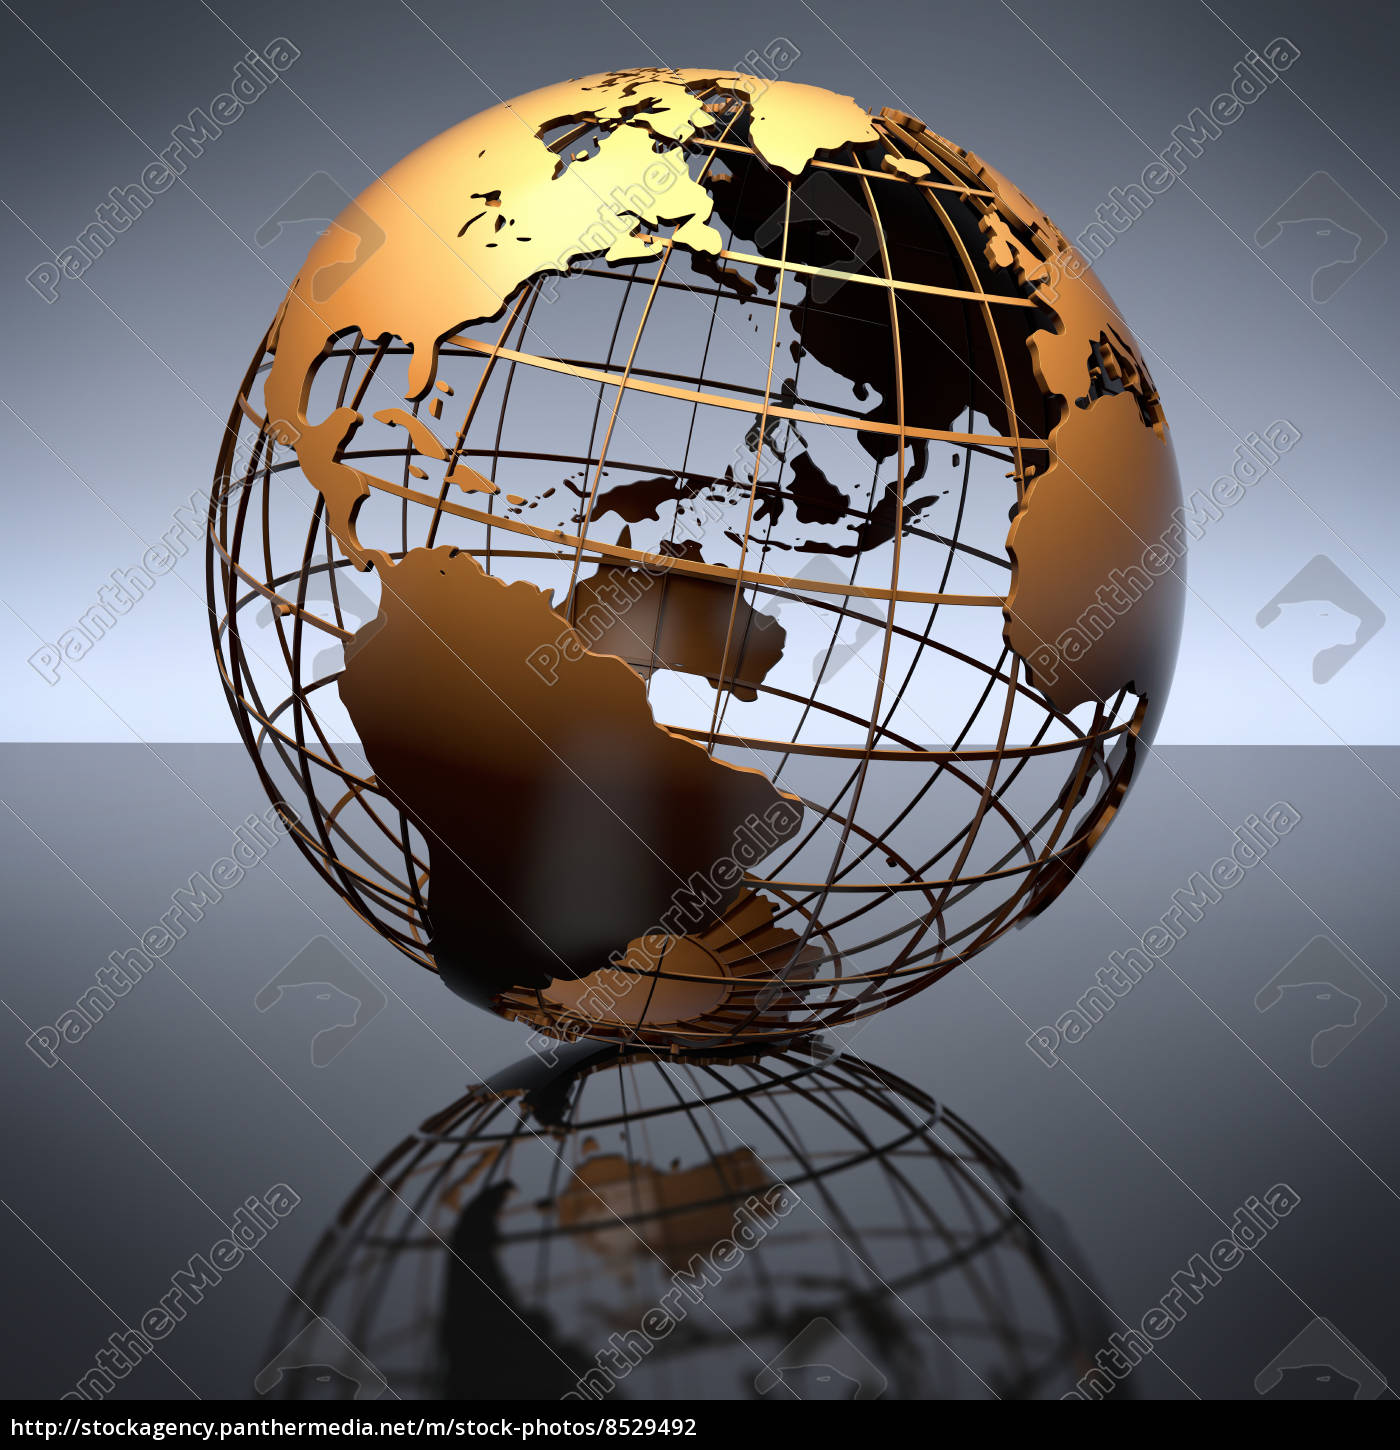 klik hinanden Udlevering metal globe auf studio reflektierenden hintergrund - Lizenzfreies Foto  #8529492 | Bildagentur PantherMedia